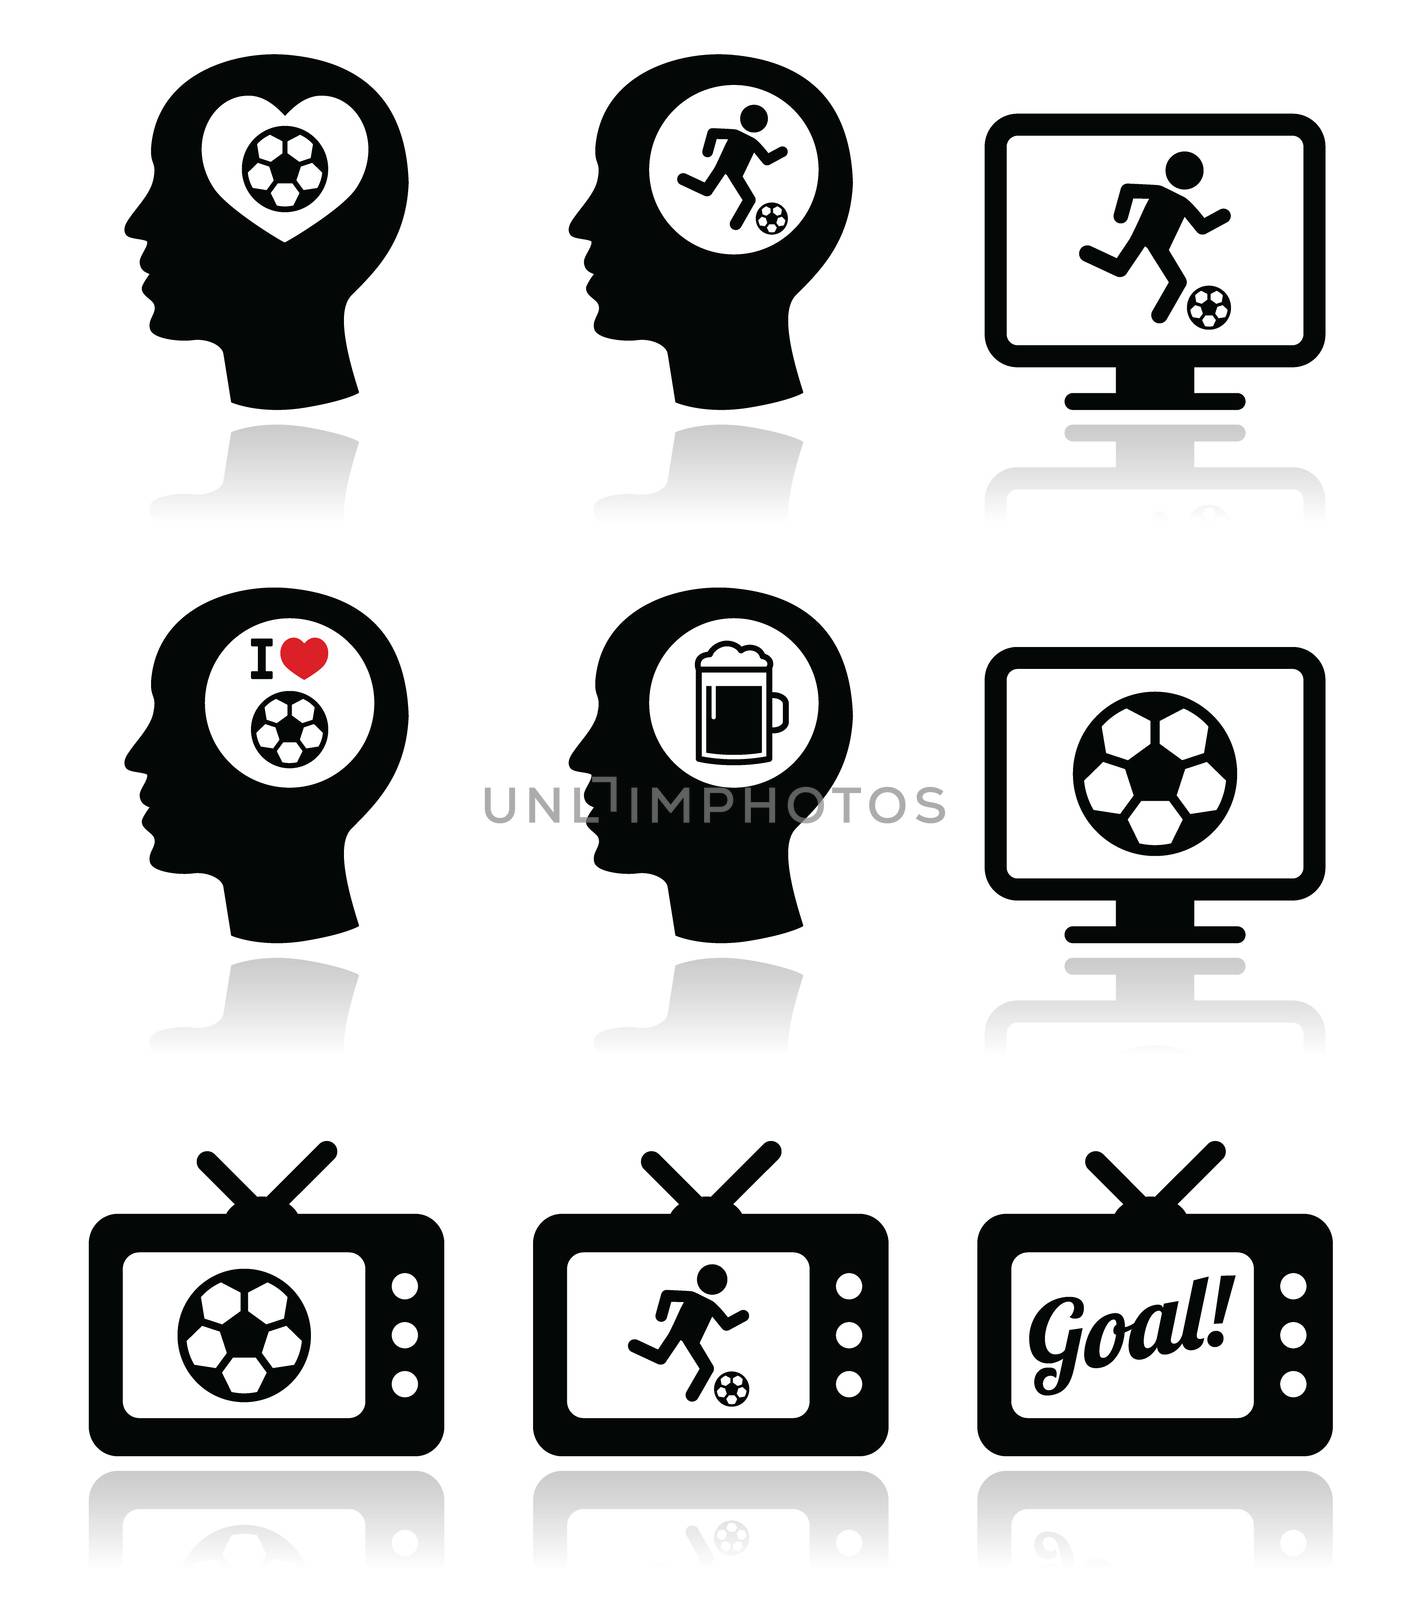 Man loving football or soccer icons set by RedKoala